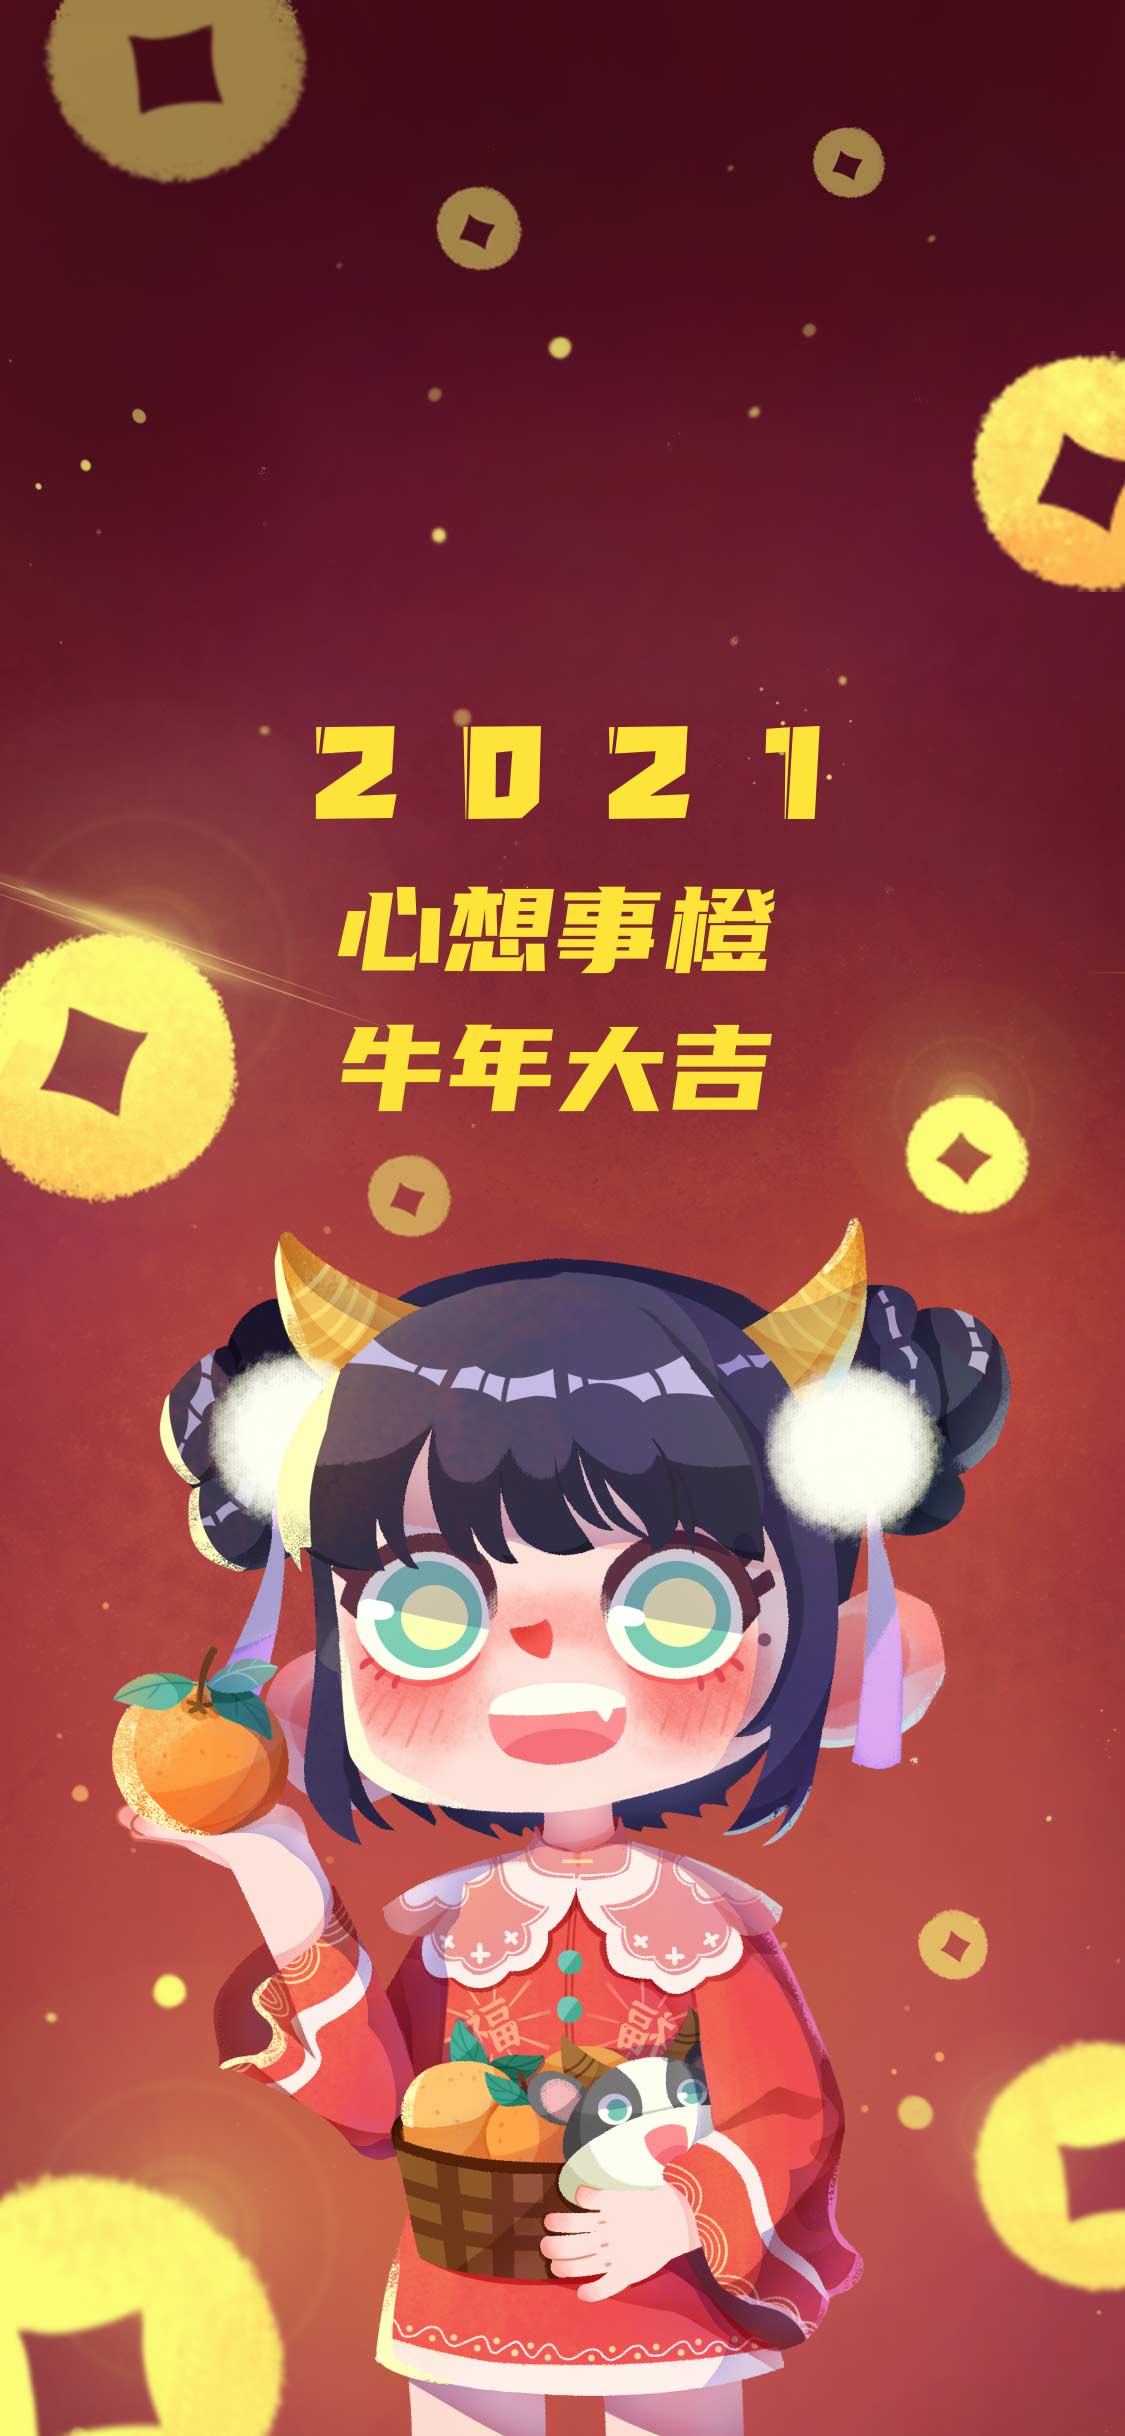 新年壁纸/2021/牛年大吉/心想事橙